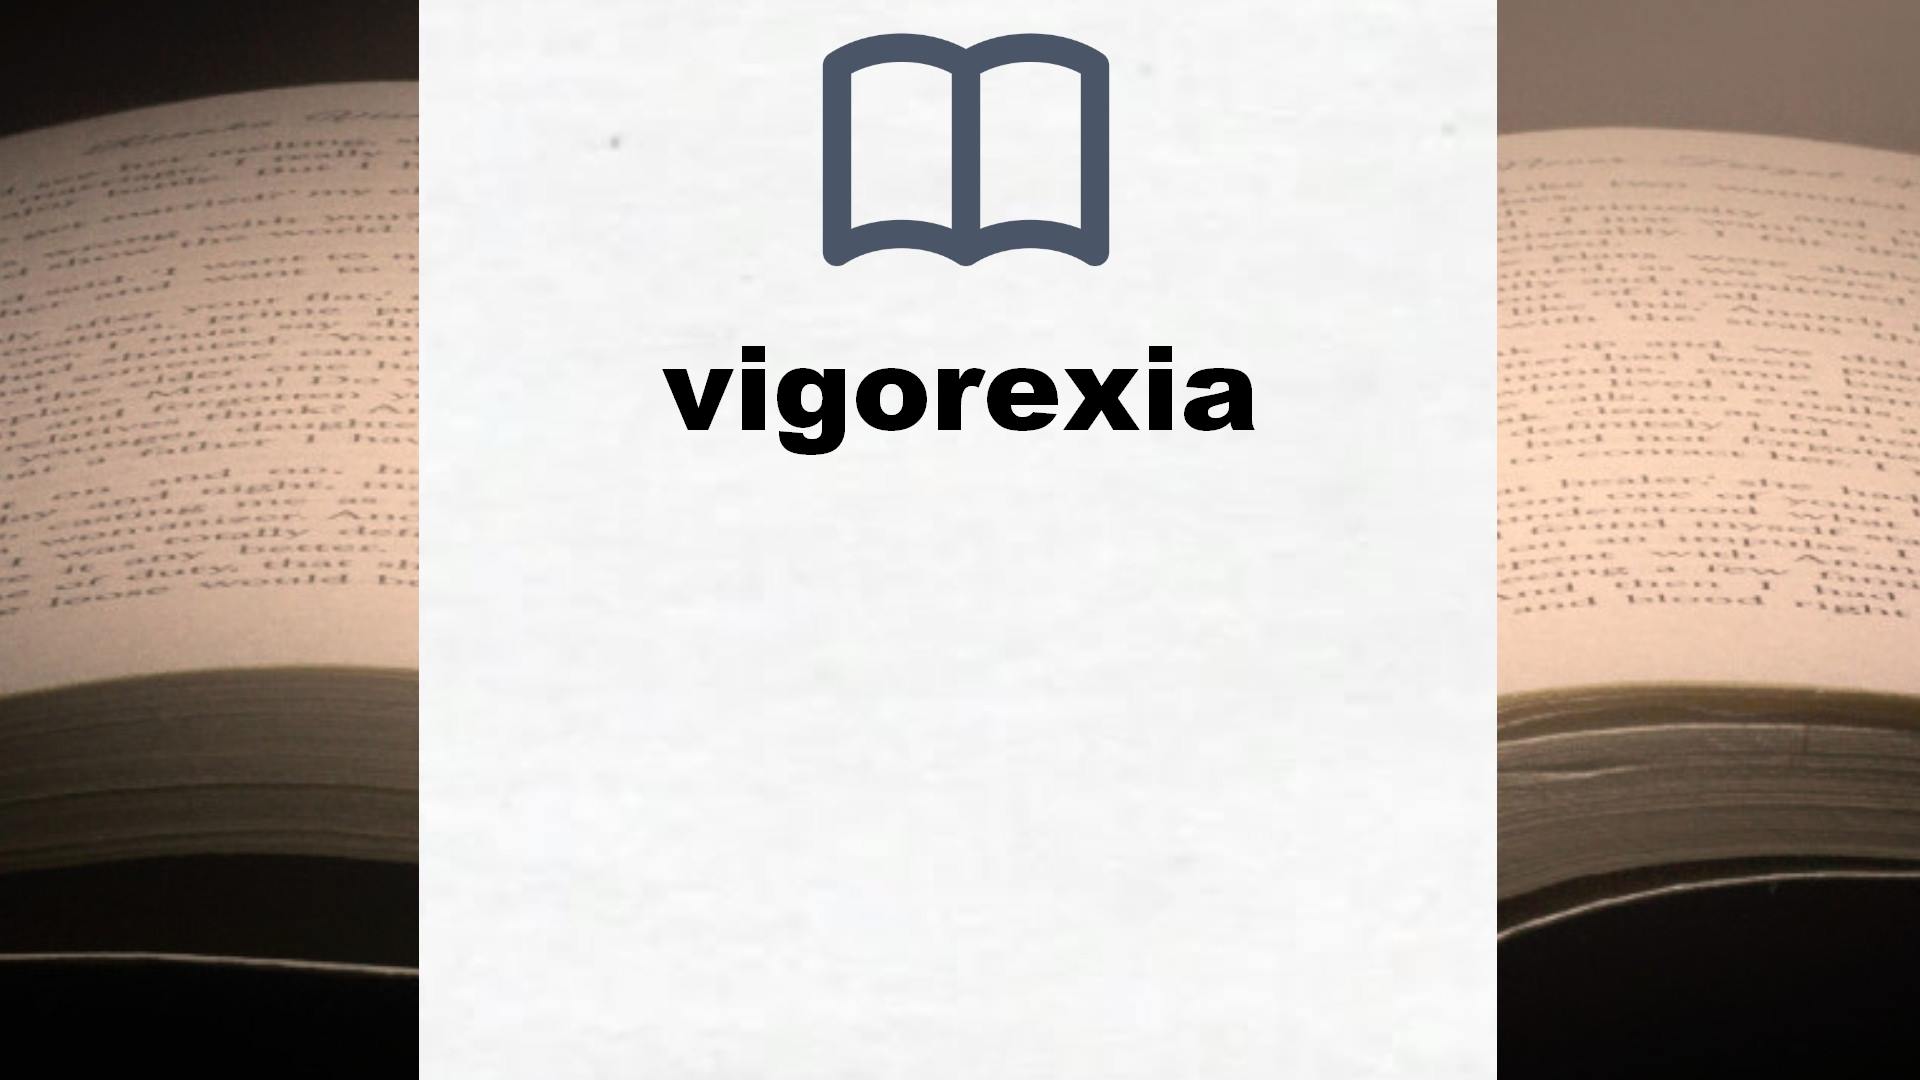 Libros sobre vigorexia